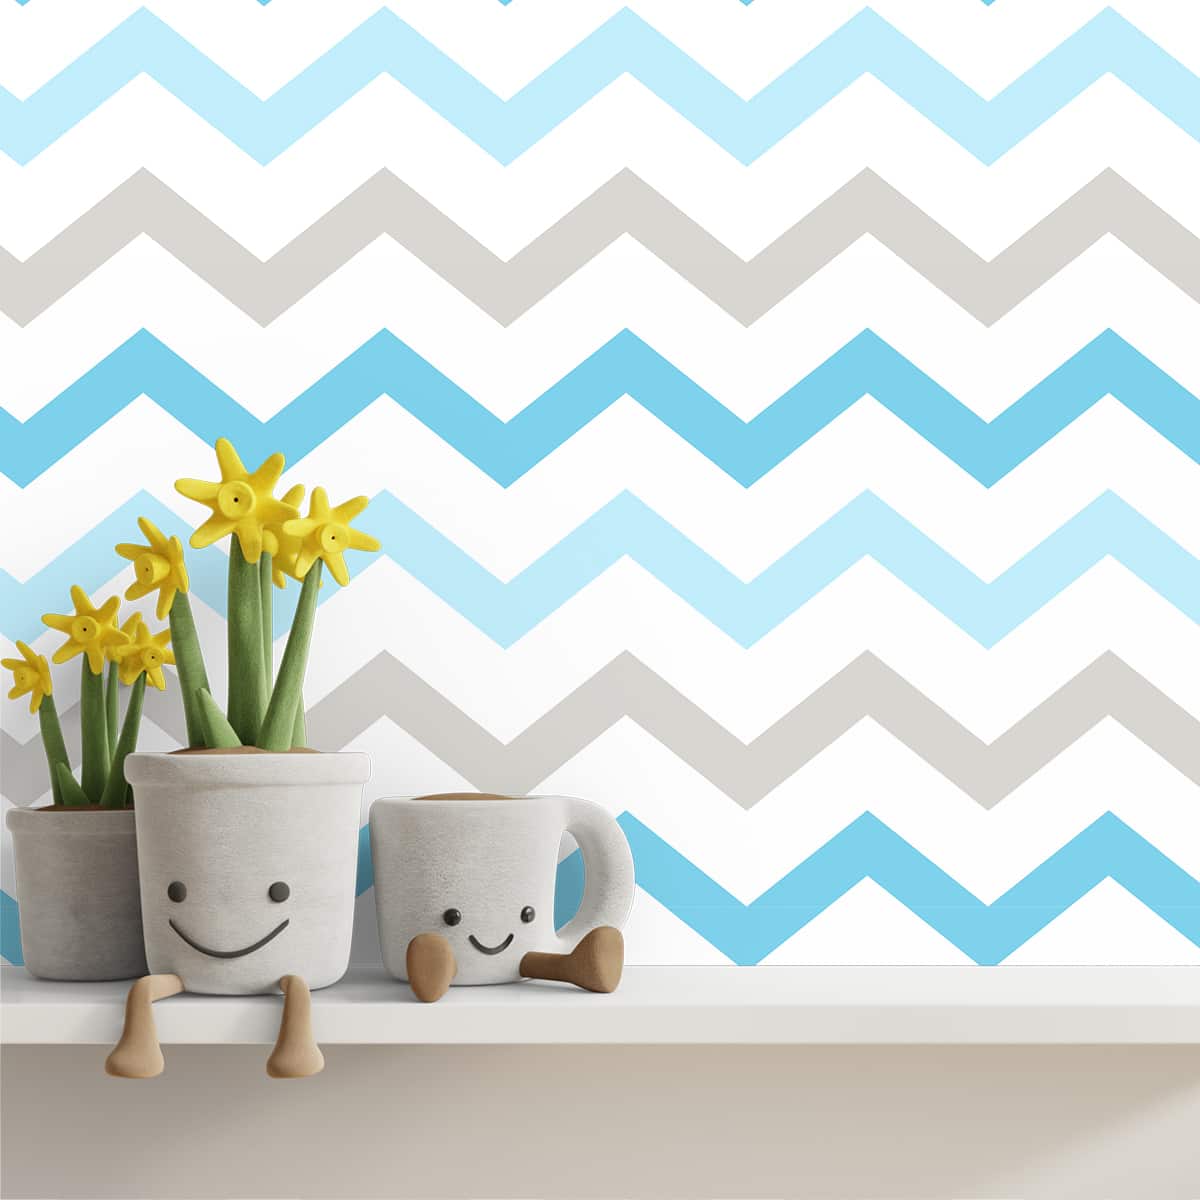 Blue & Grey Stripes Pattern Design Wallpaper for Kids Room